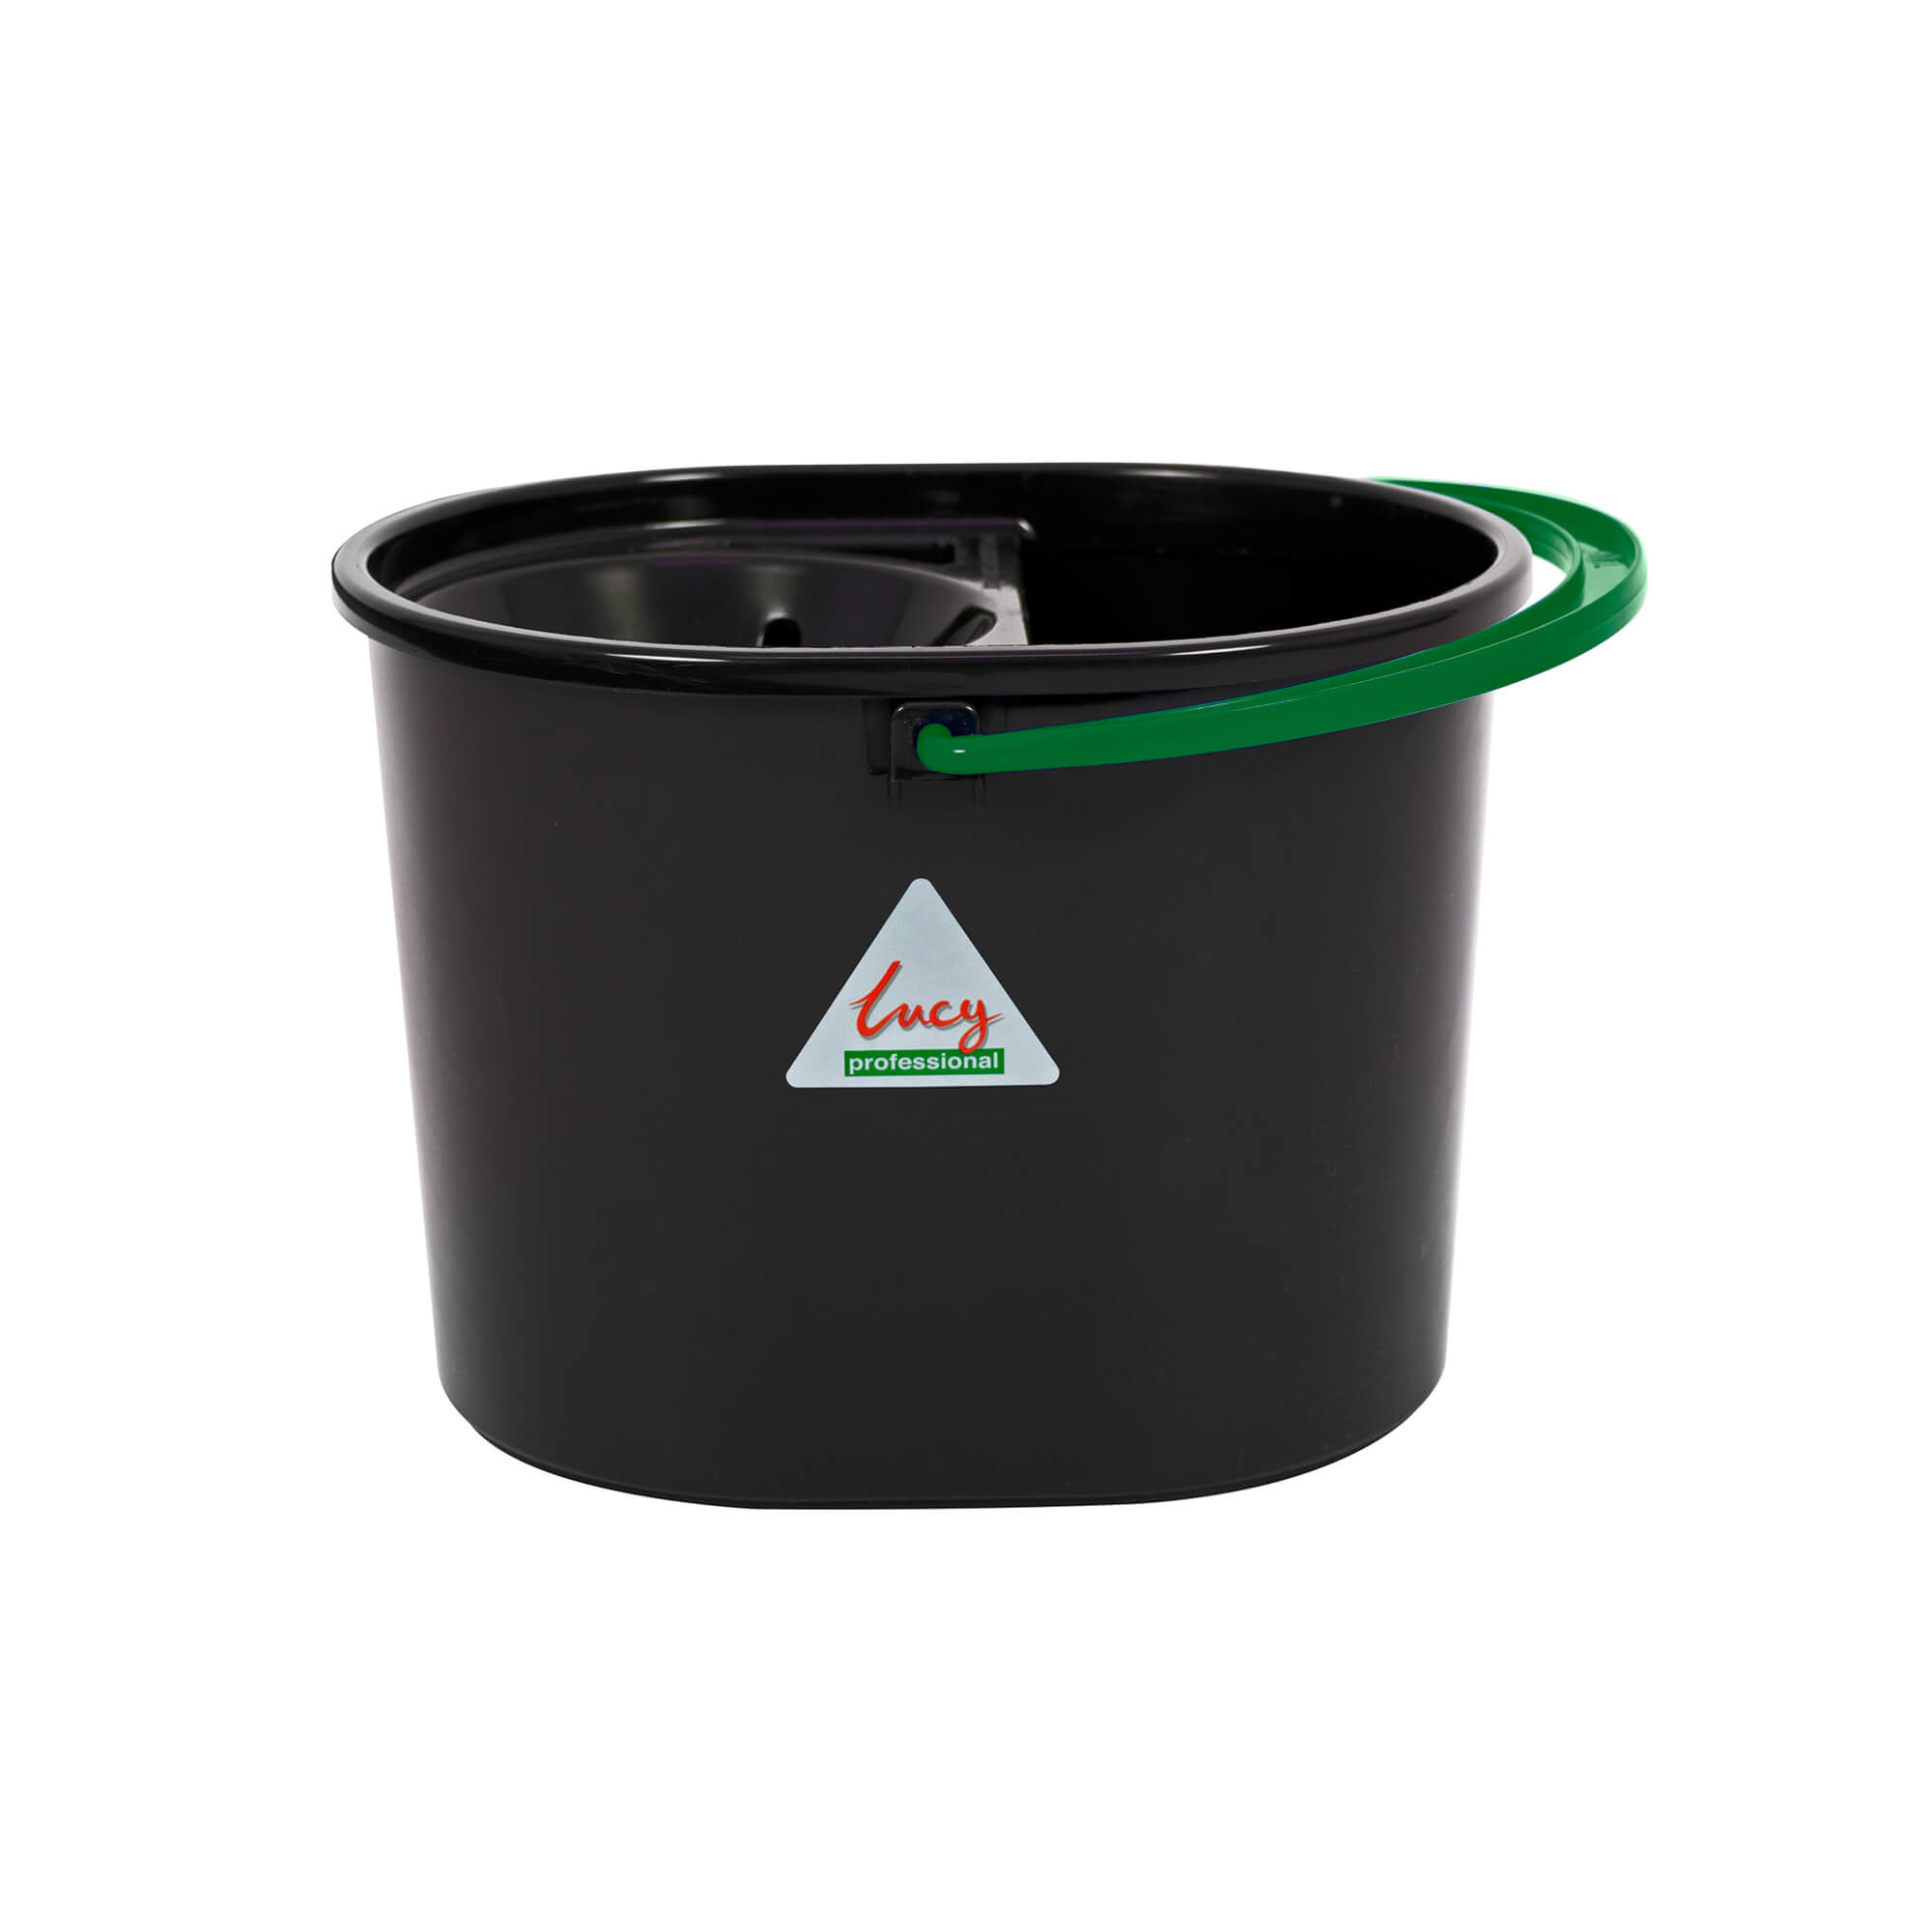 Lucy Plastic Mop Bucket, Green - 2102-01G